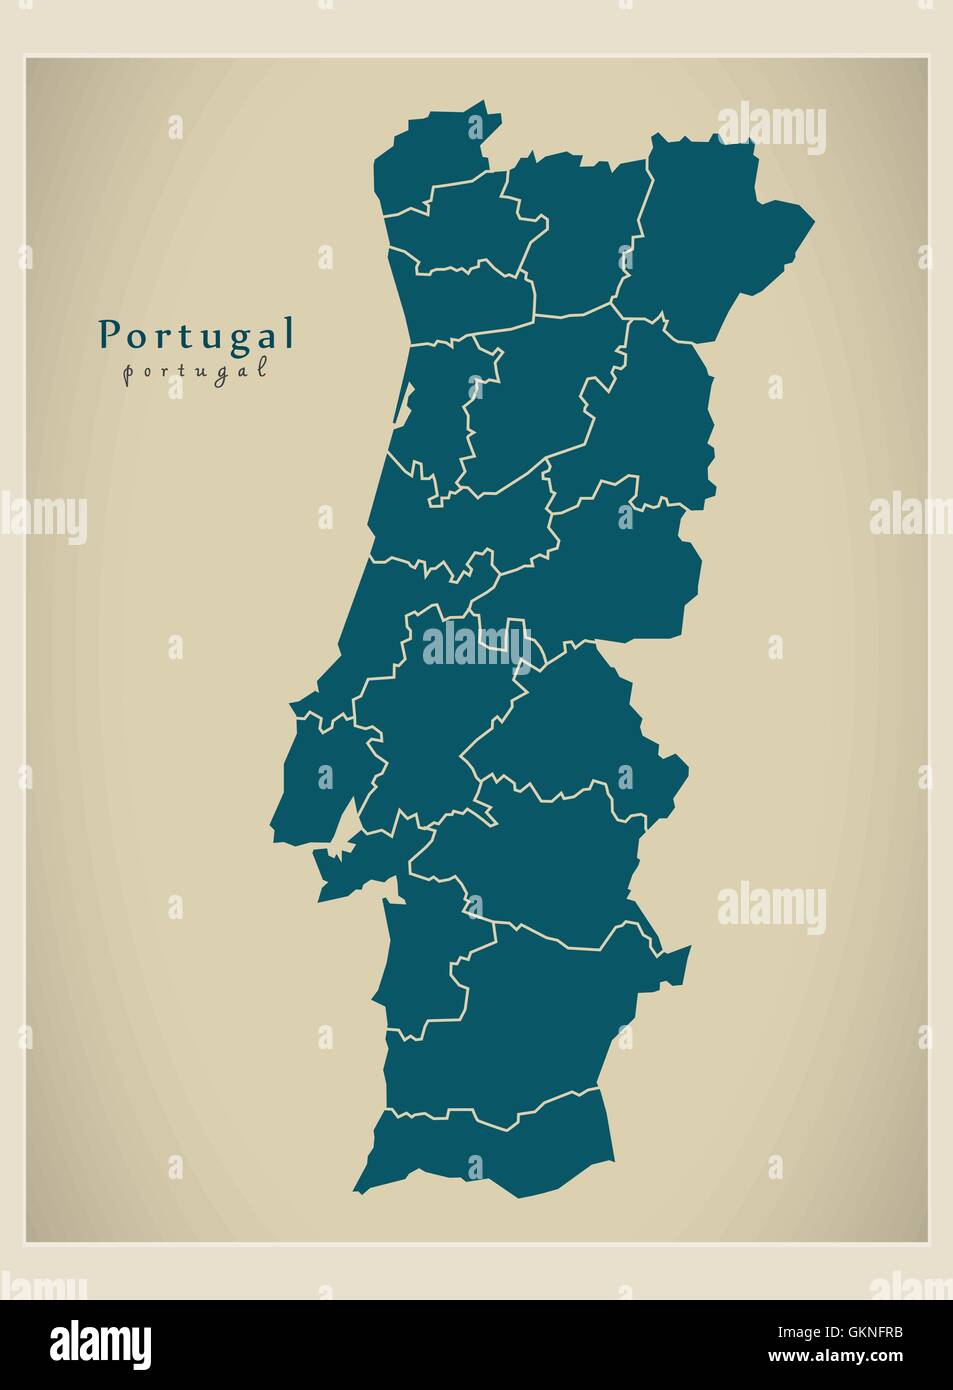 Map portugal immagini e fotografie stock ad alta risoluzione - Alamy